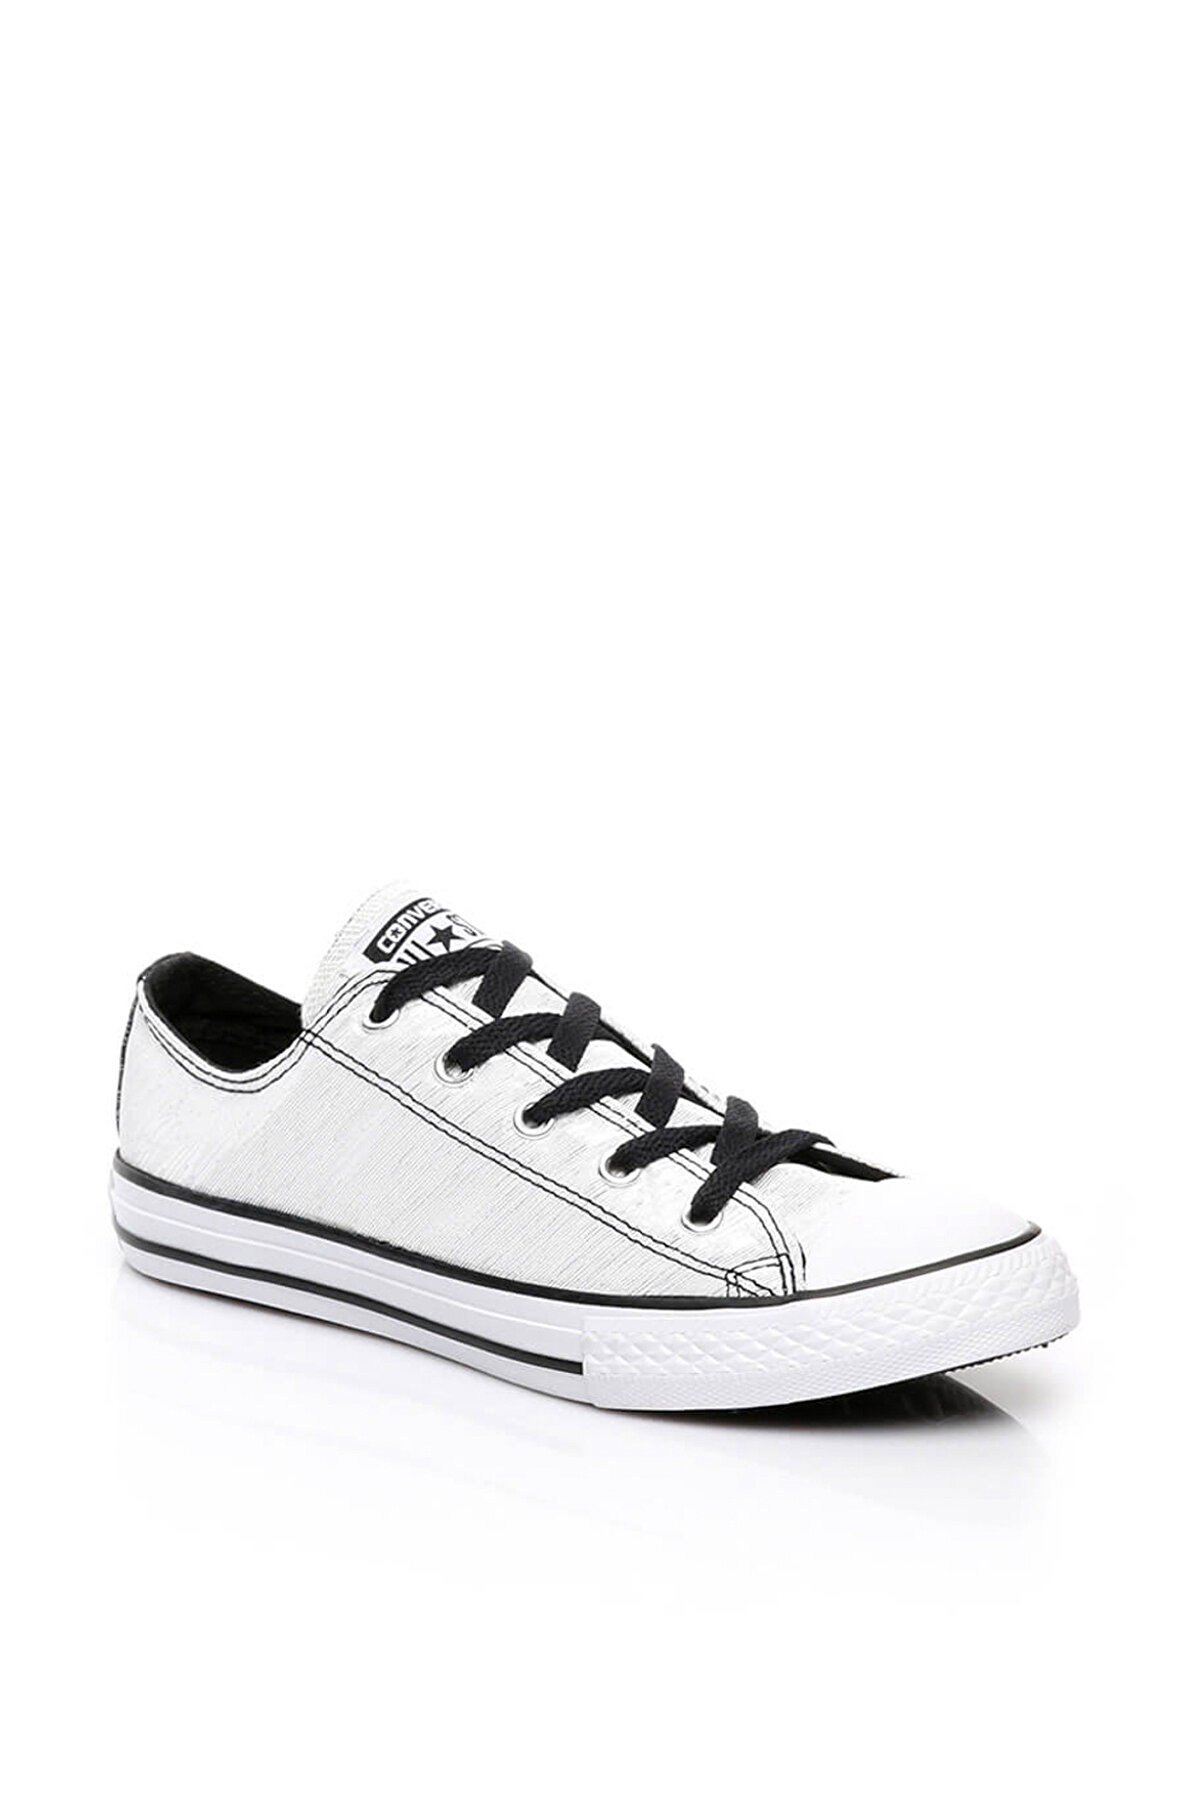 Converse Beyaz Unisex Çocuk Ayakkabı Chuck Taylor All Star 651802C